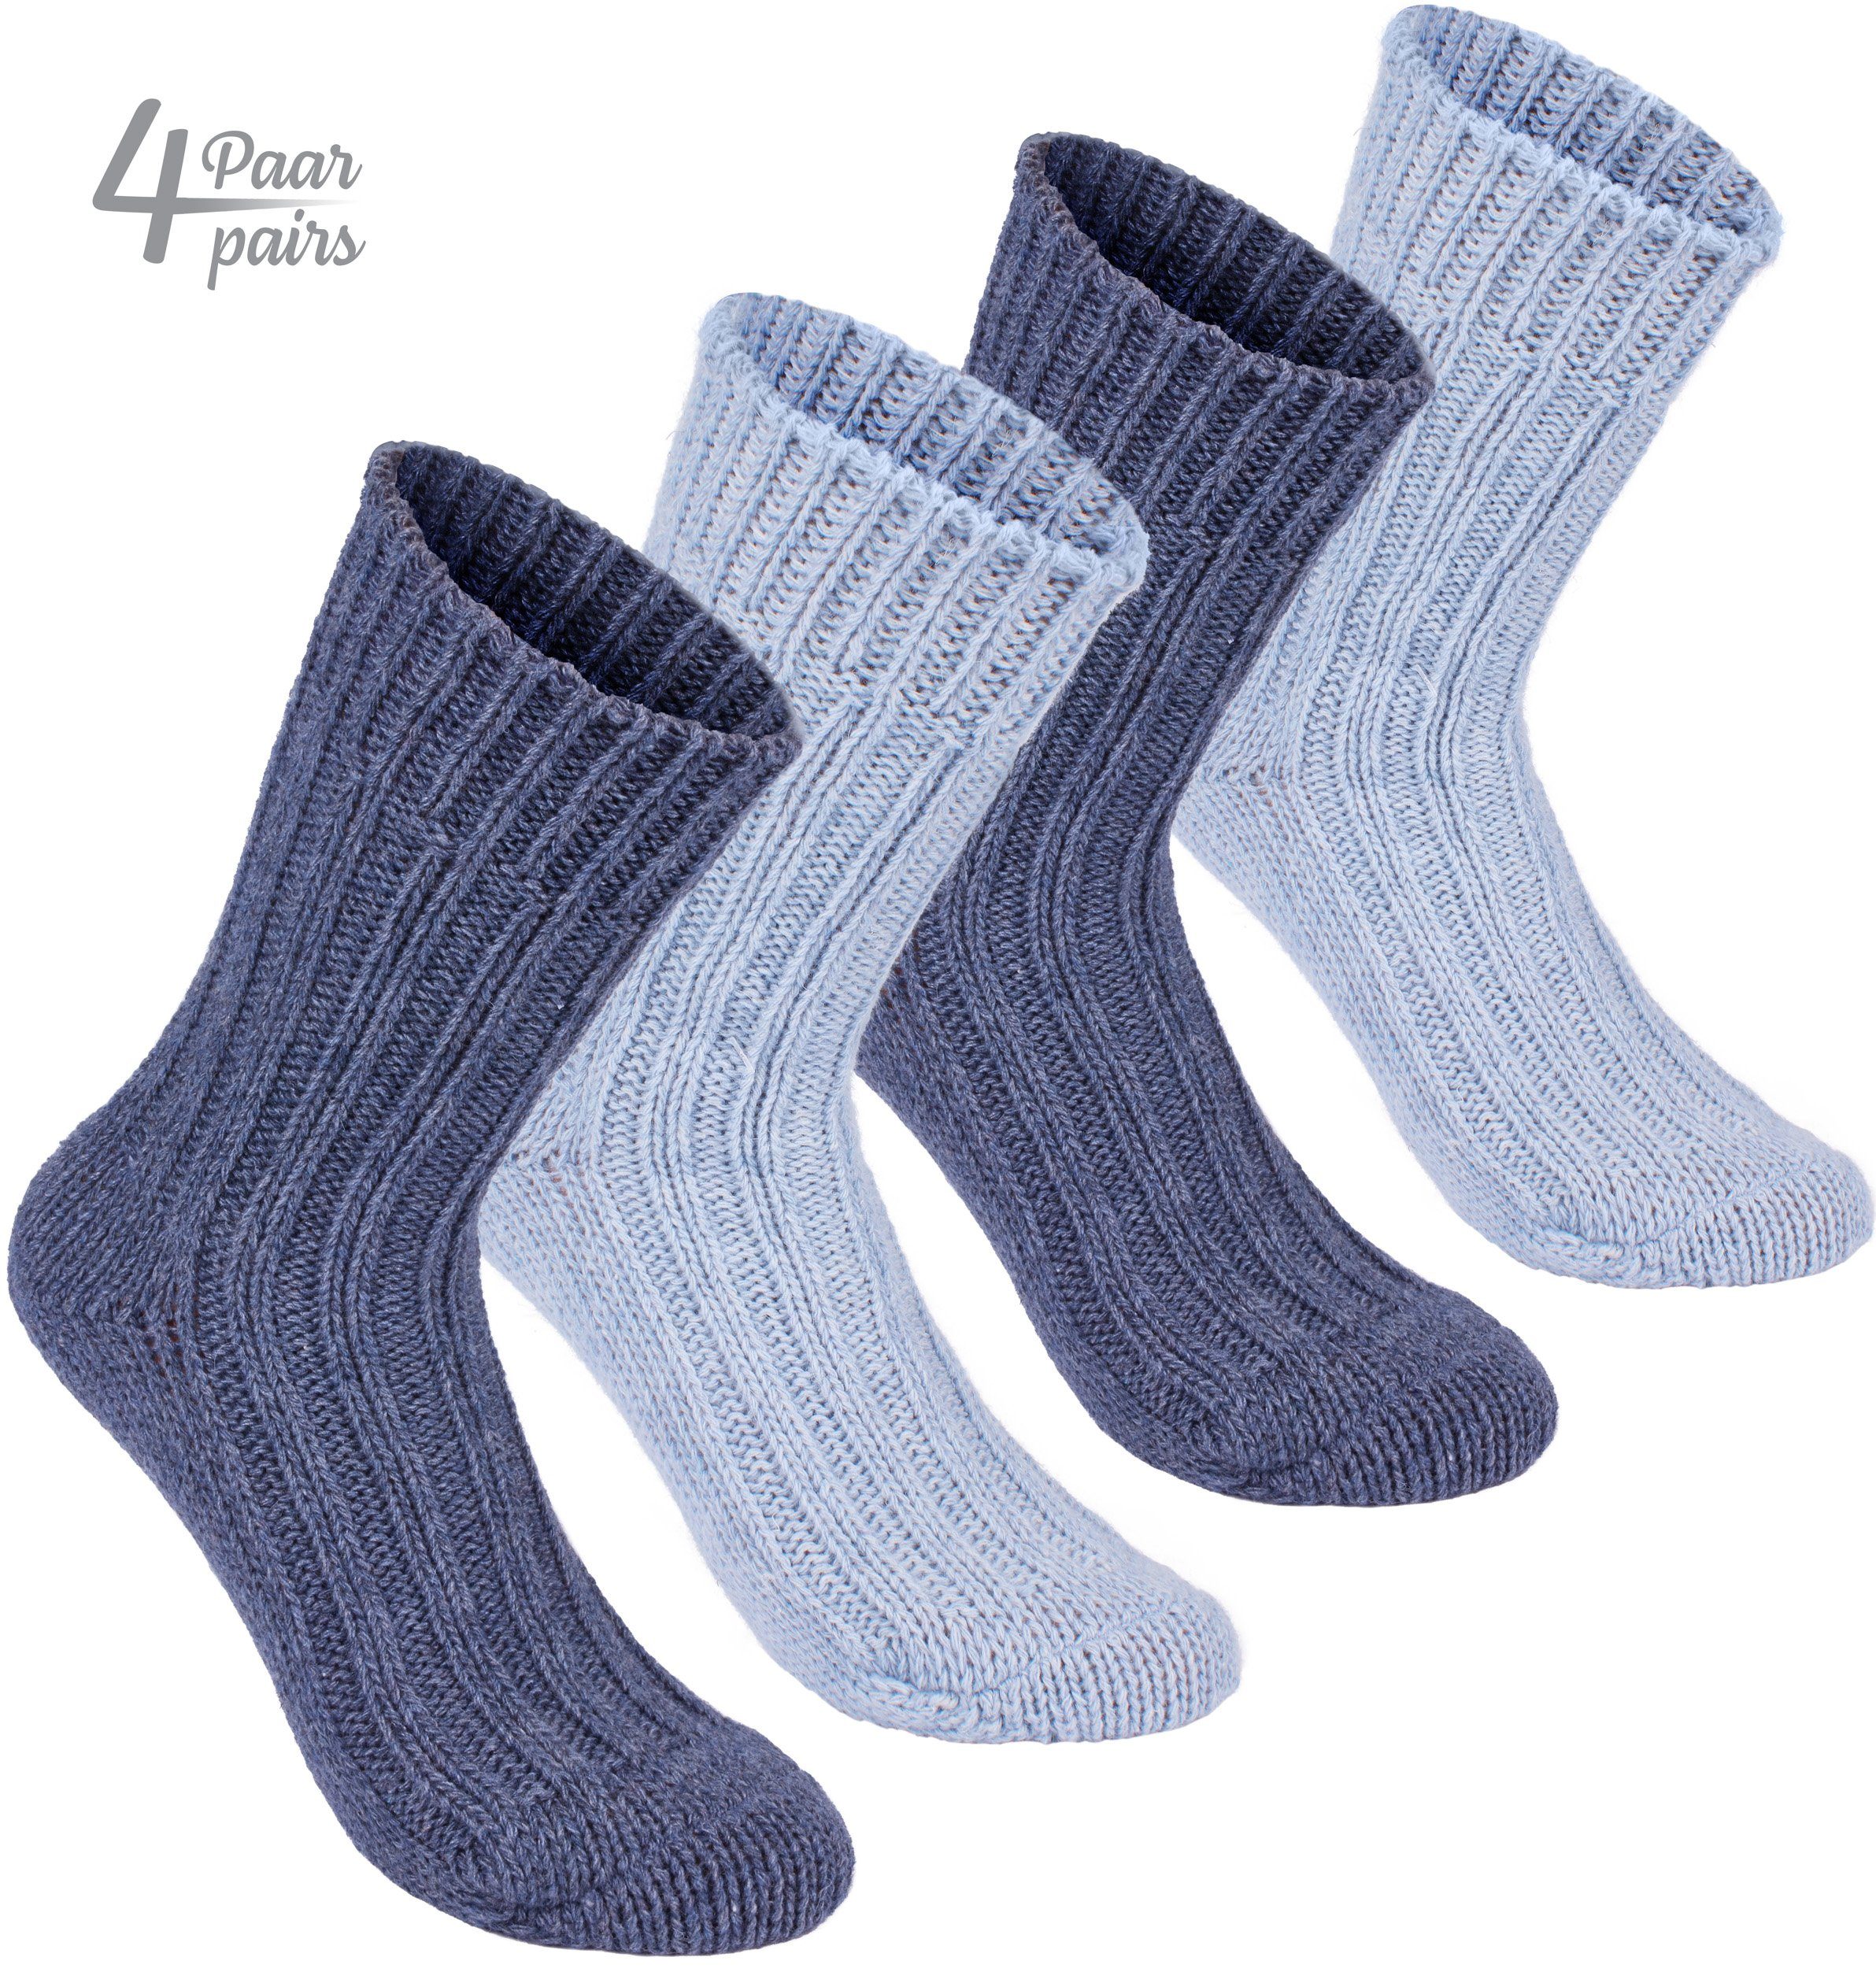 BRUBAKER Kuschelsocken warme dicke Alpaka Socken (4-Paar, 100% Alpakawolle)  Wintersocken für Damen und Herren